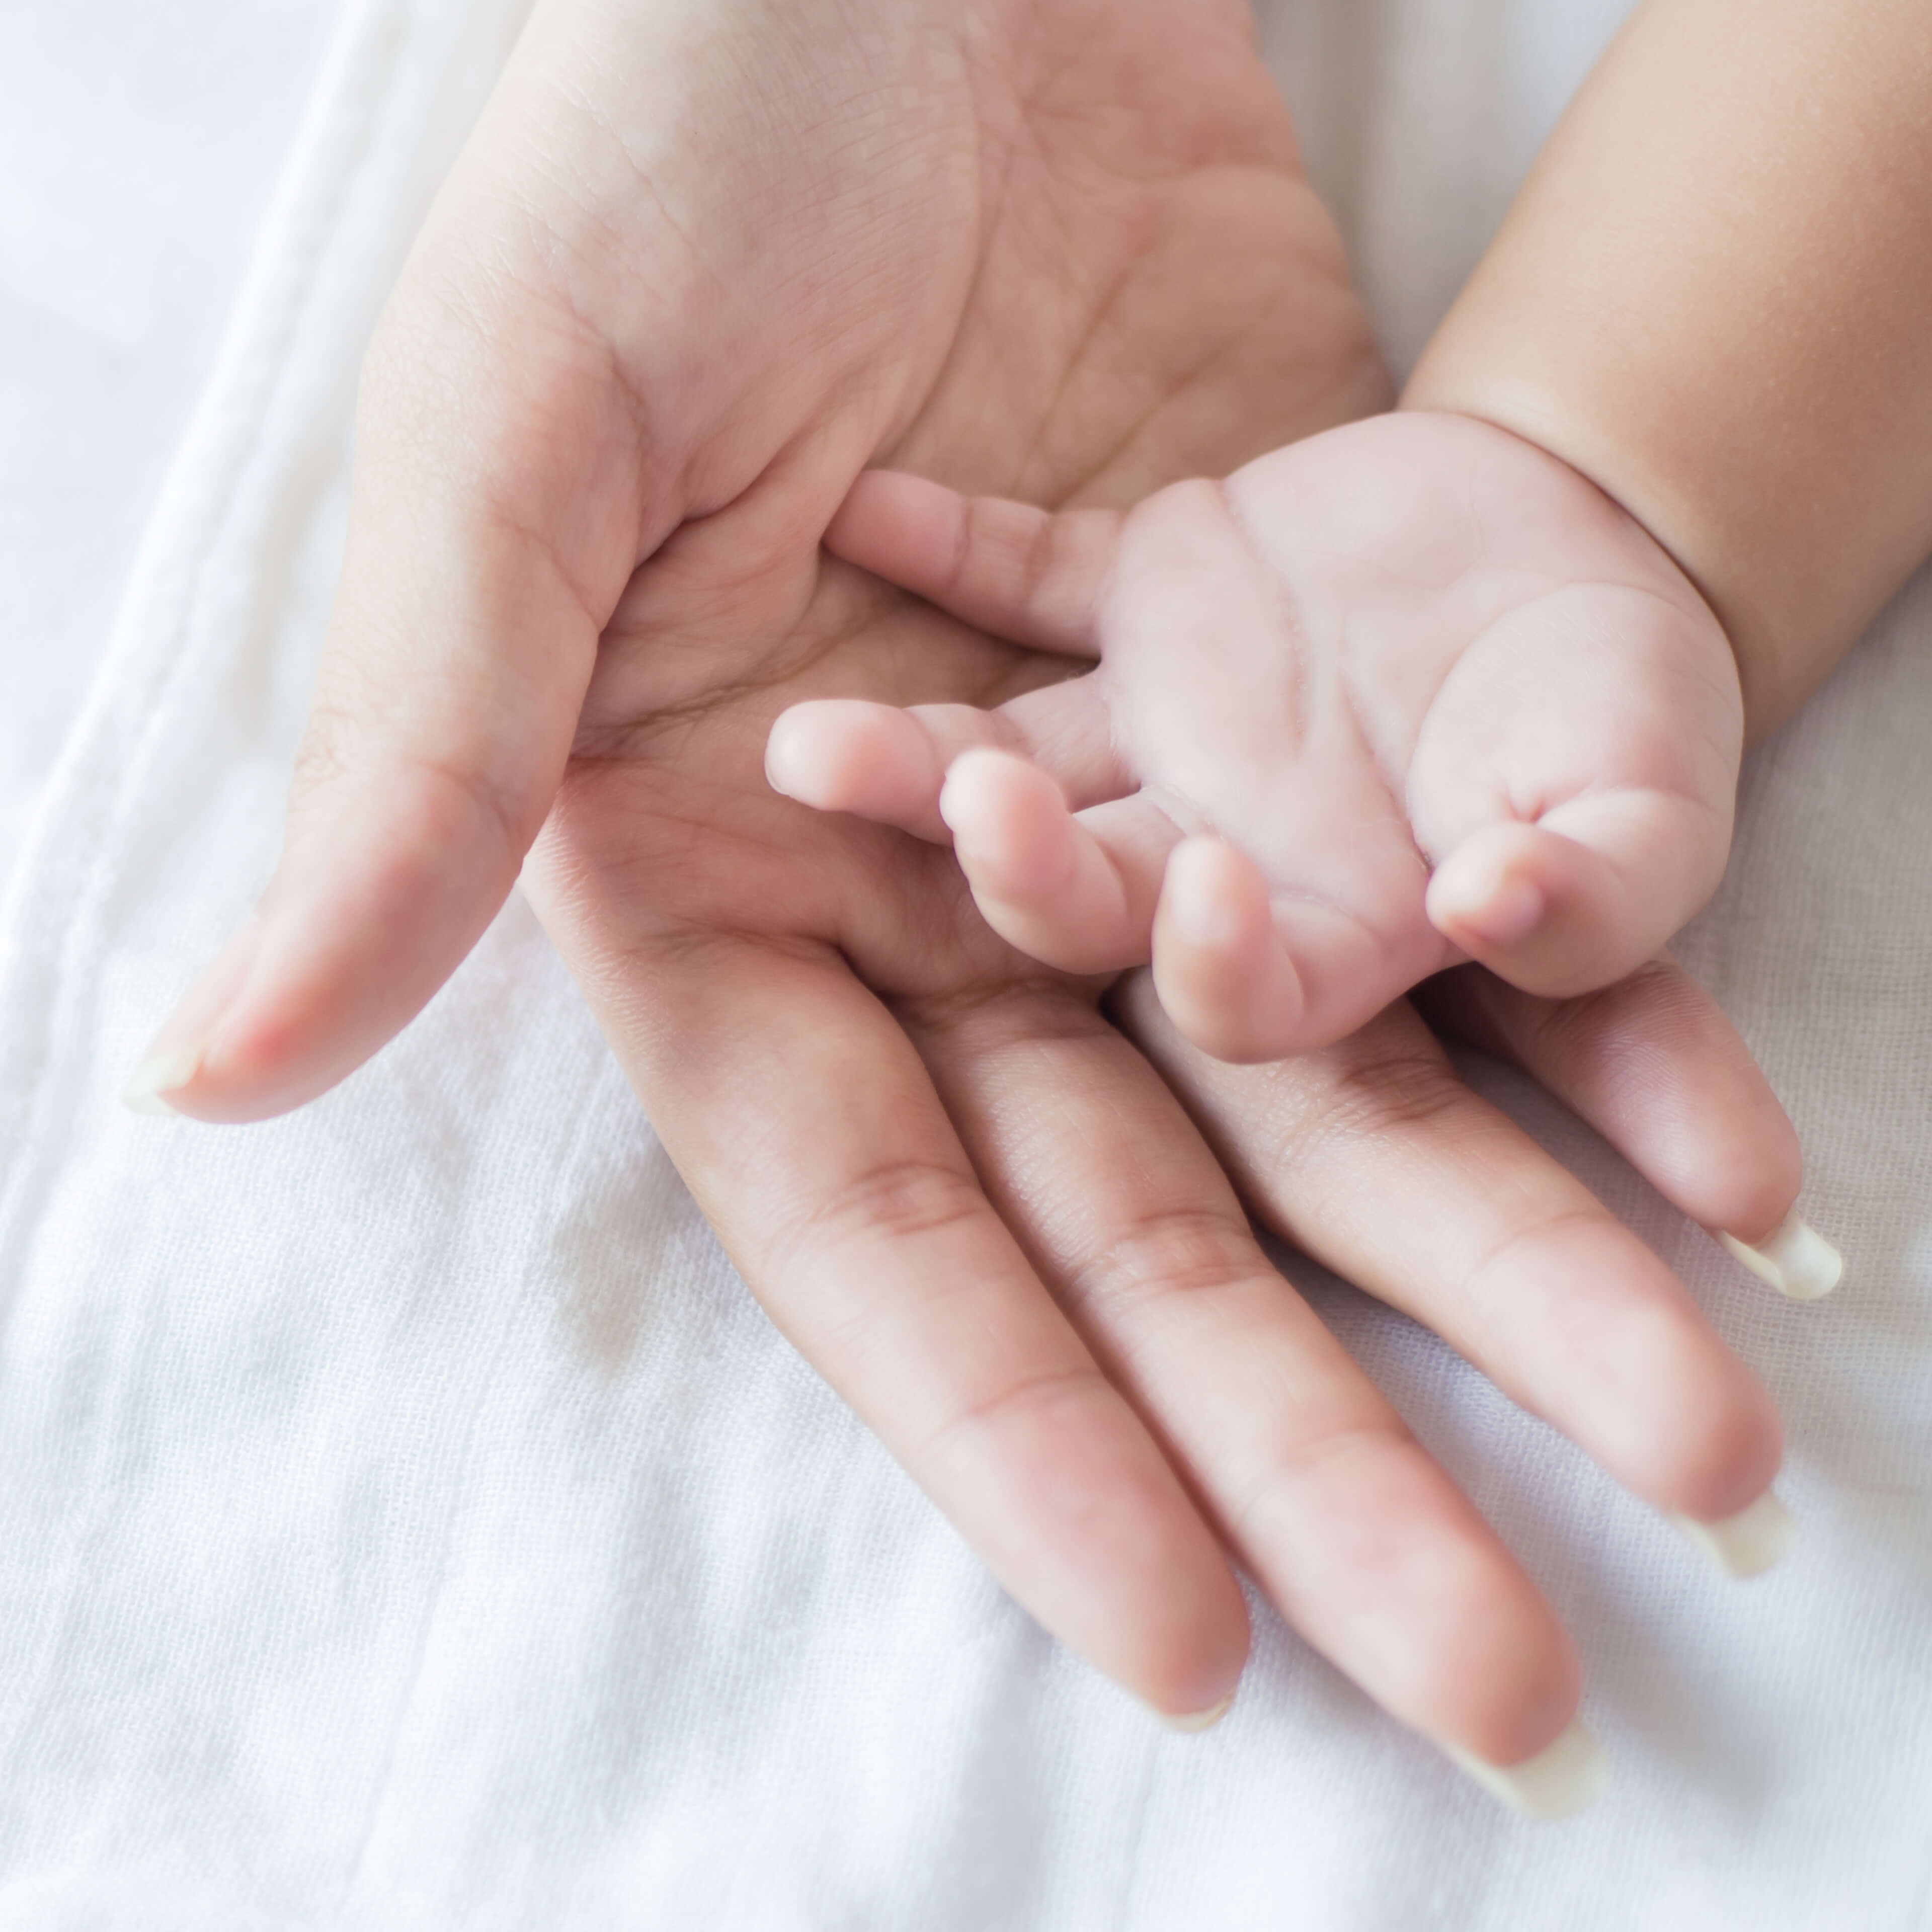 Un examen pouvant détecter 7 maladies chez le nouveau-né